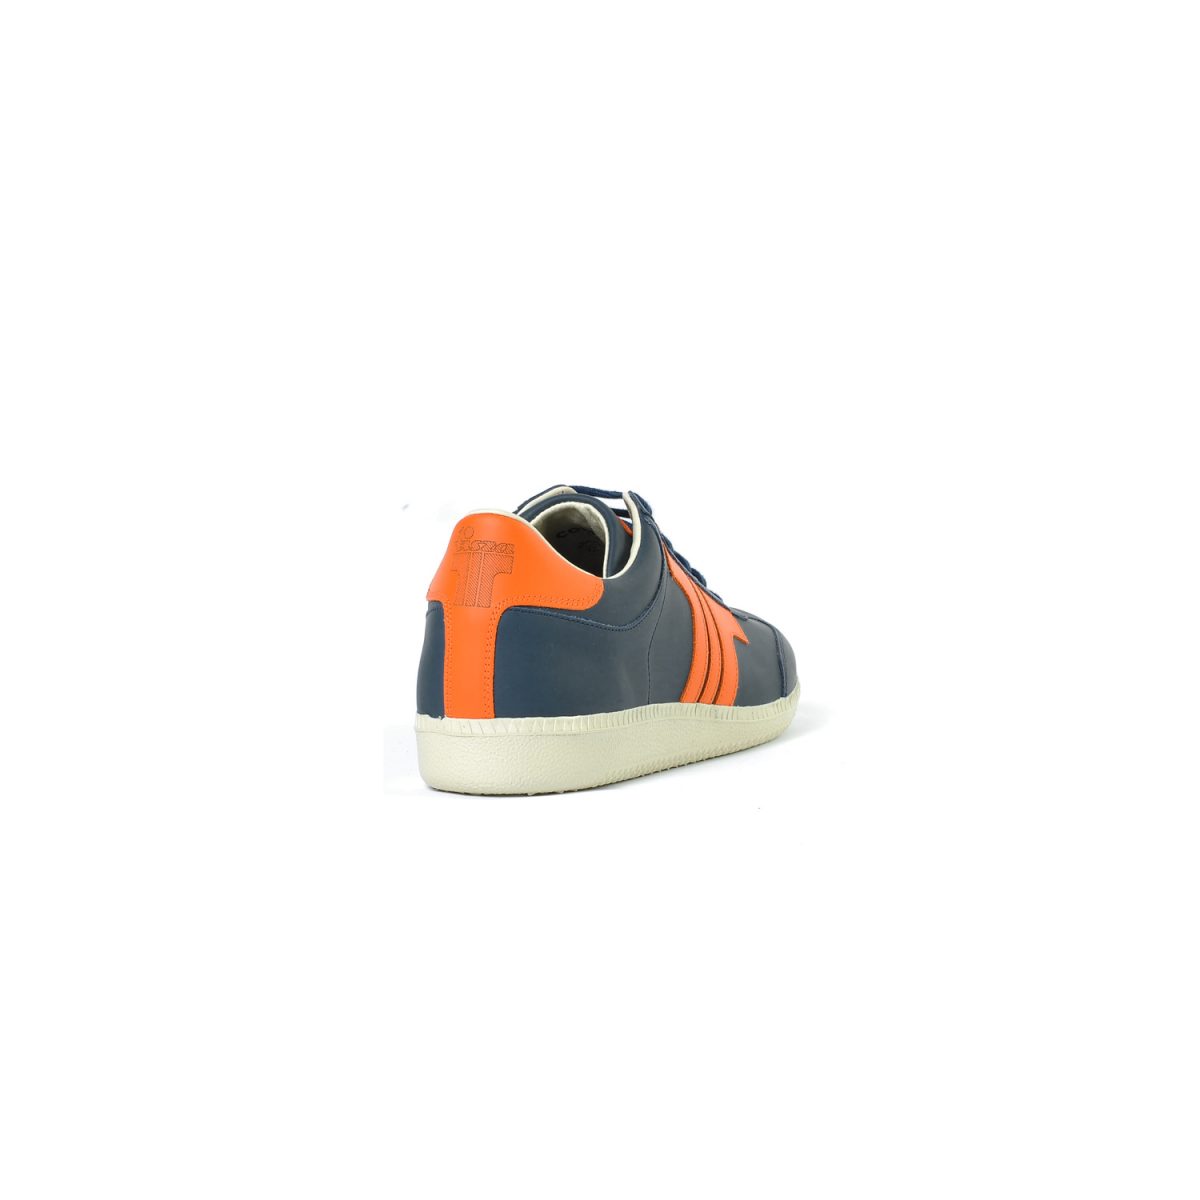 Tisza shoes - Compakt - Navy-orange